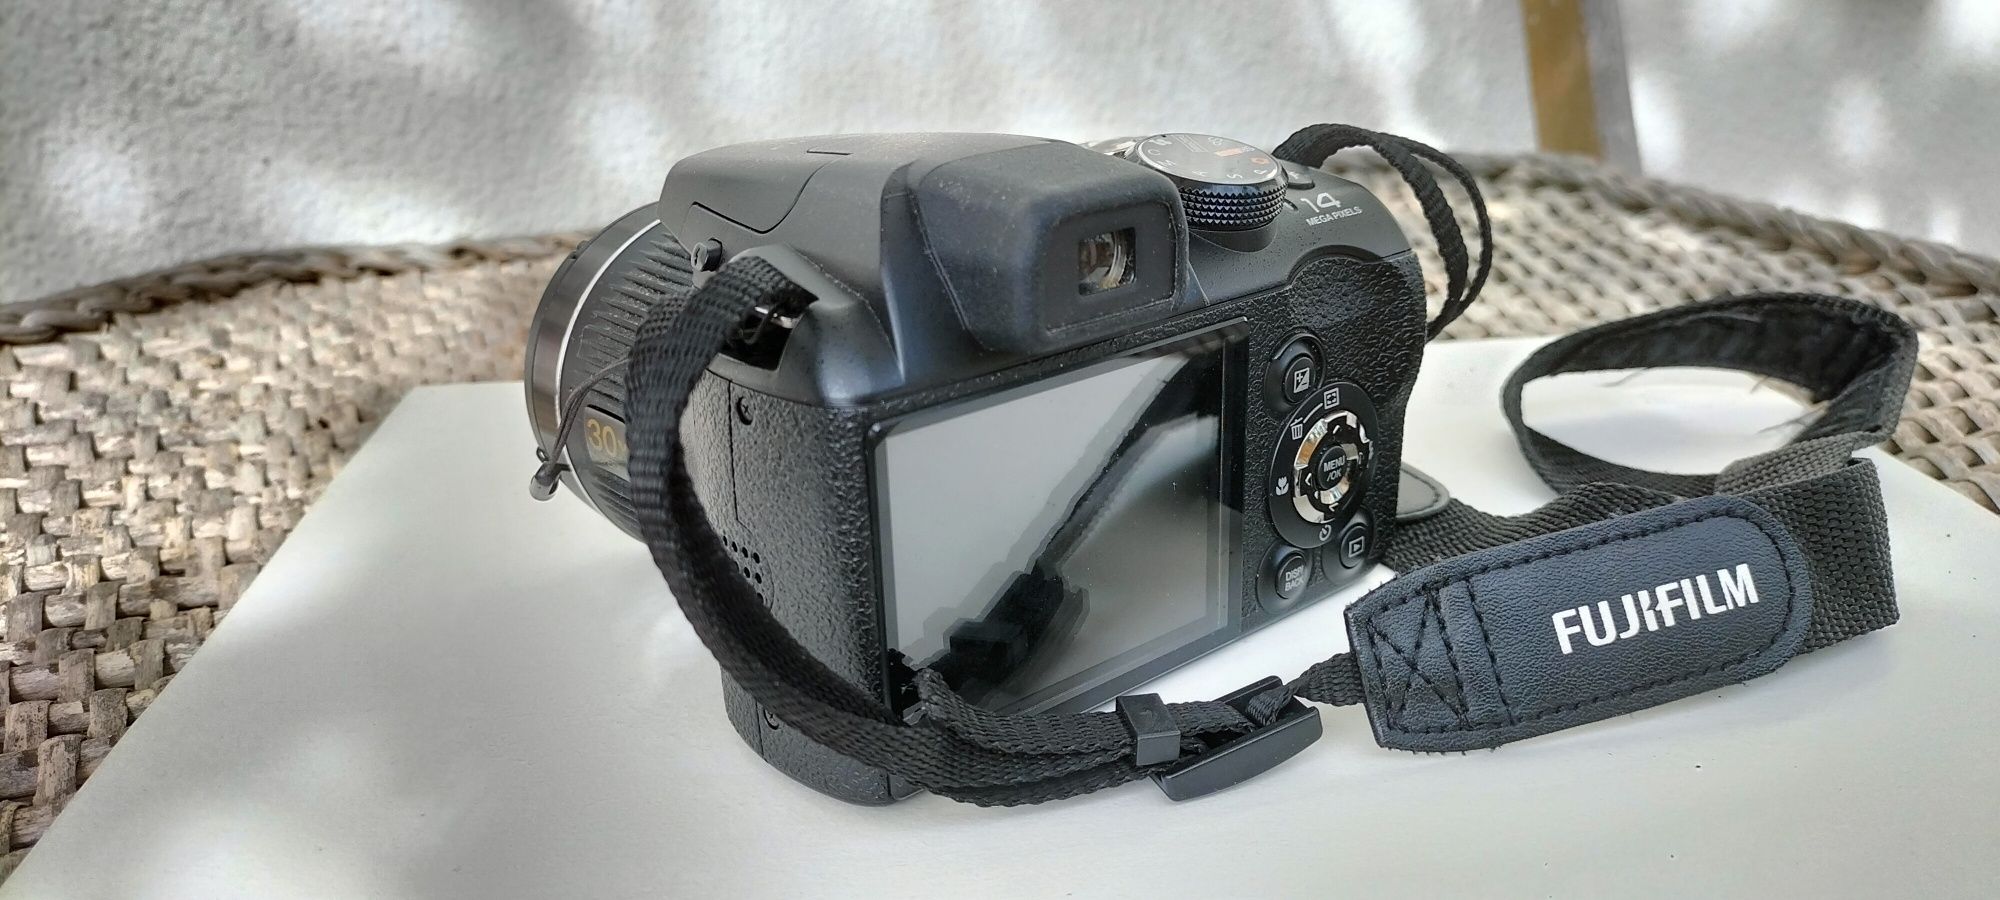 Fujifilm Finepix s4000 (para mais tarde recordar)